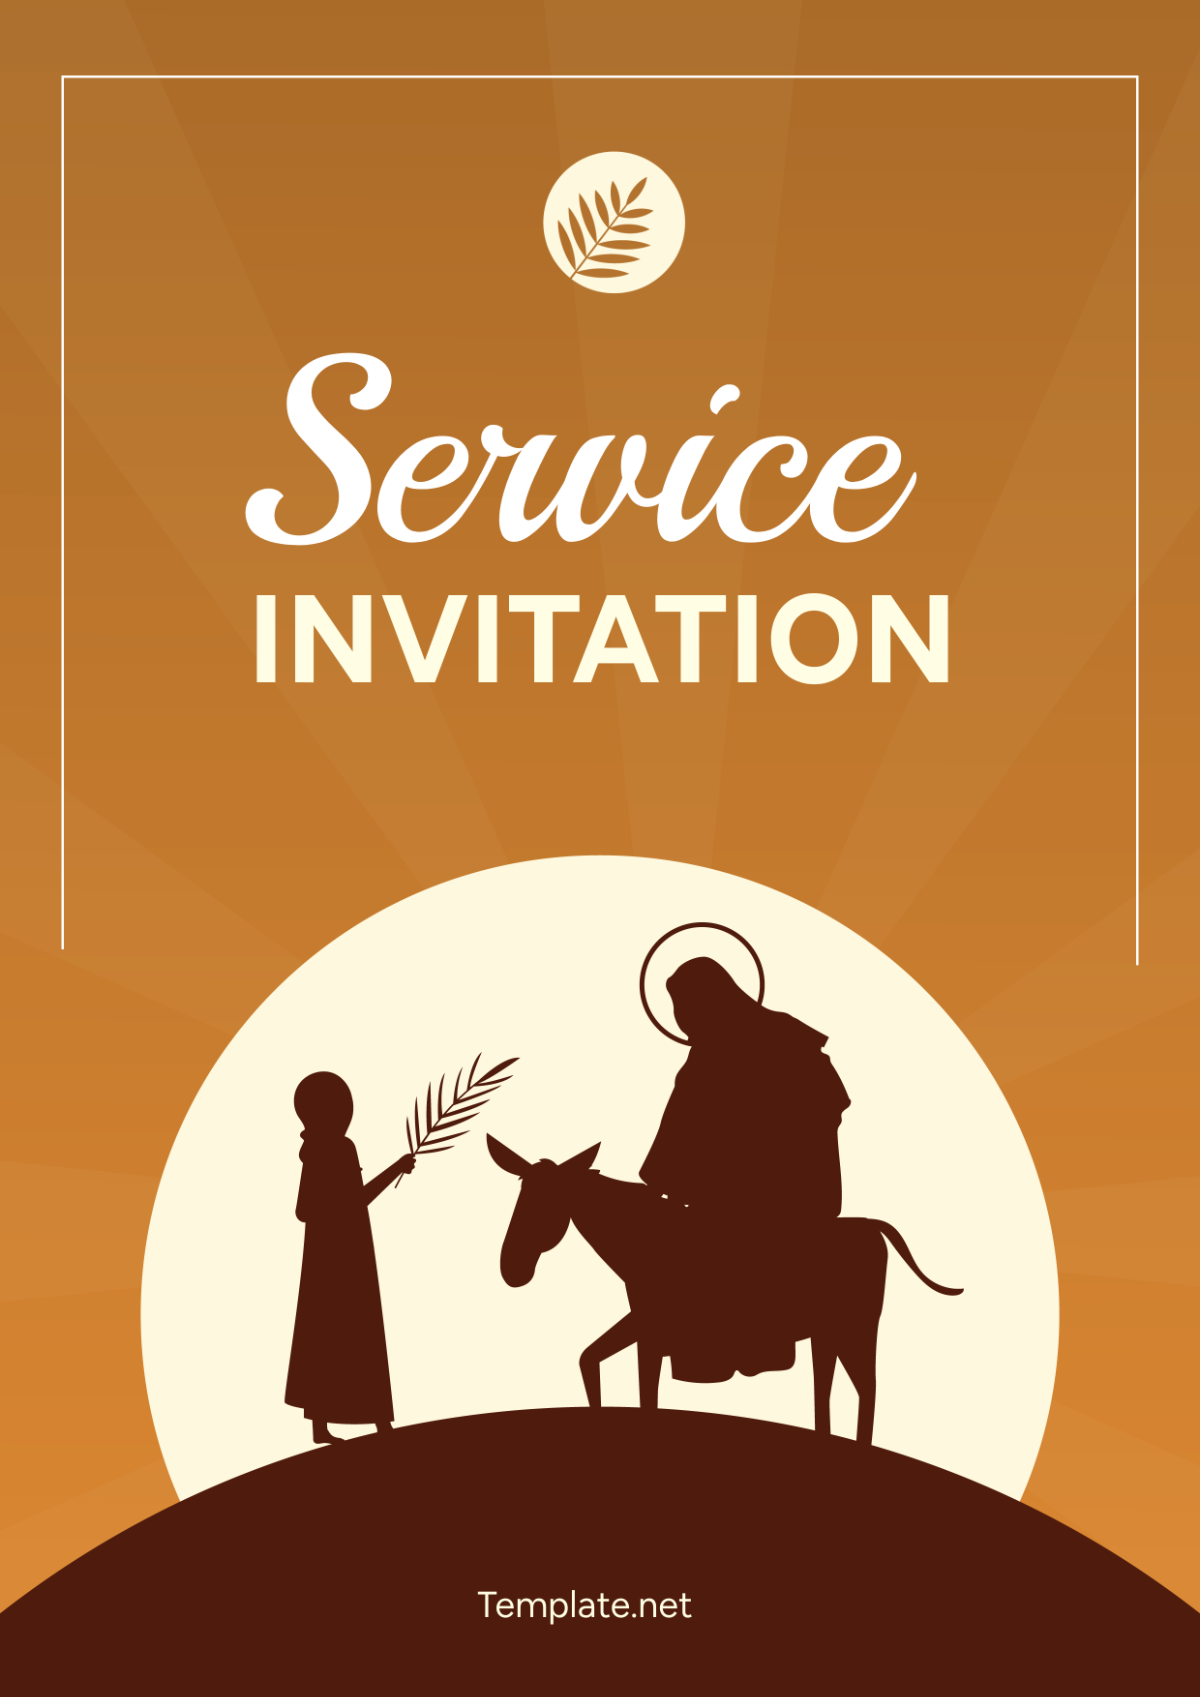 Service Invitation Cover Page